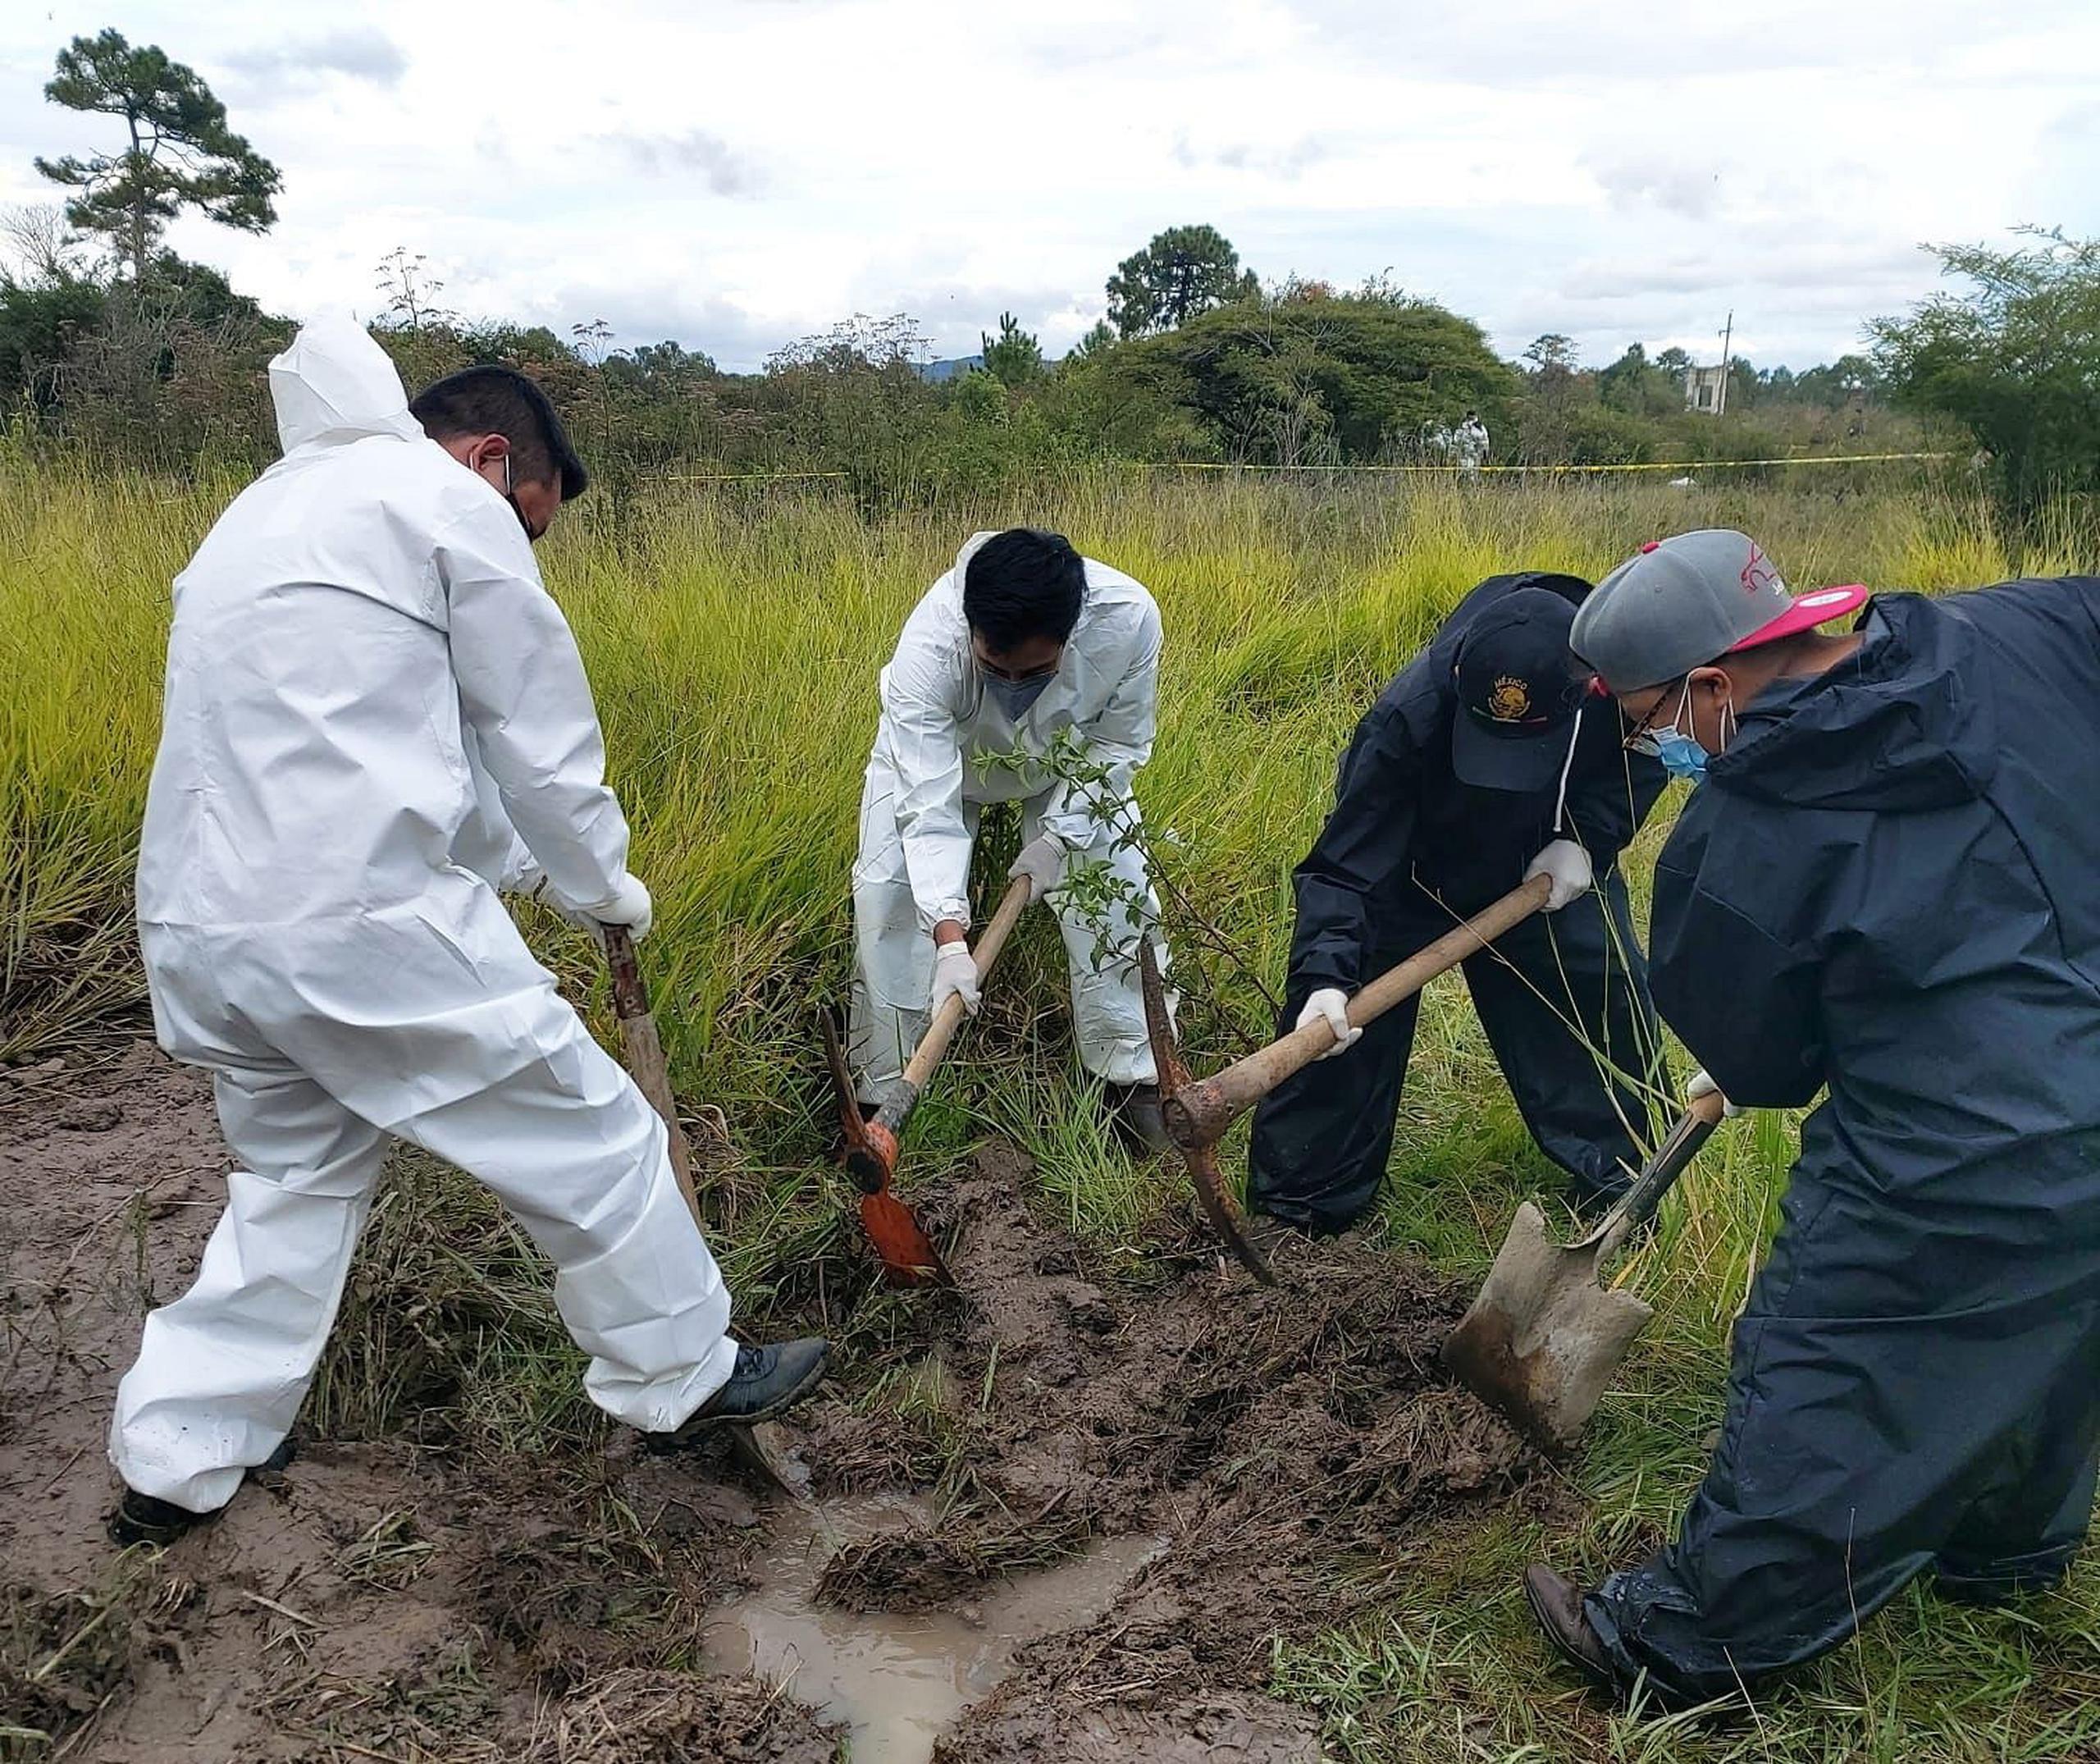 Fotografía cedida hoy, por la Fiscalía del estado de Chiapas, donde se observa a peritos forenses laborando en la zona donde encontraron una fosa con restos humanos, en la comunidad de Comitán en el estado de Chiapas (México). EFE/Fiscalía del estado de Chiapas